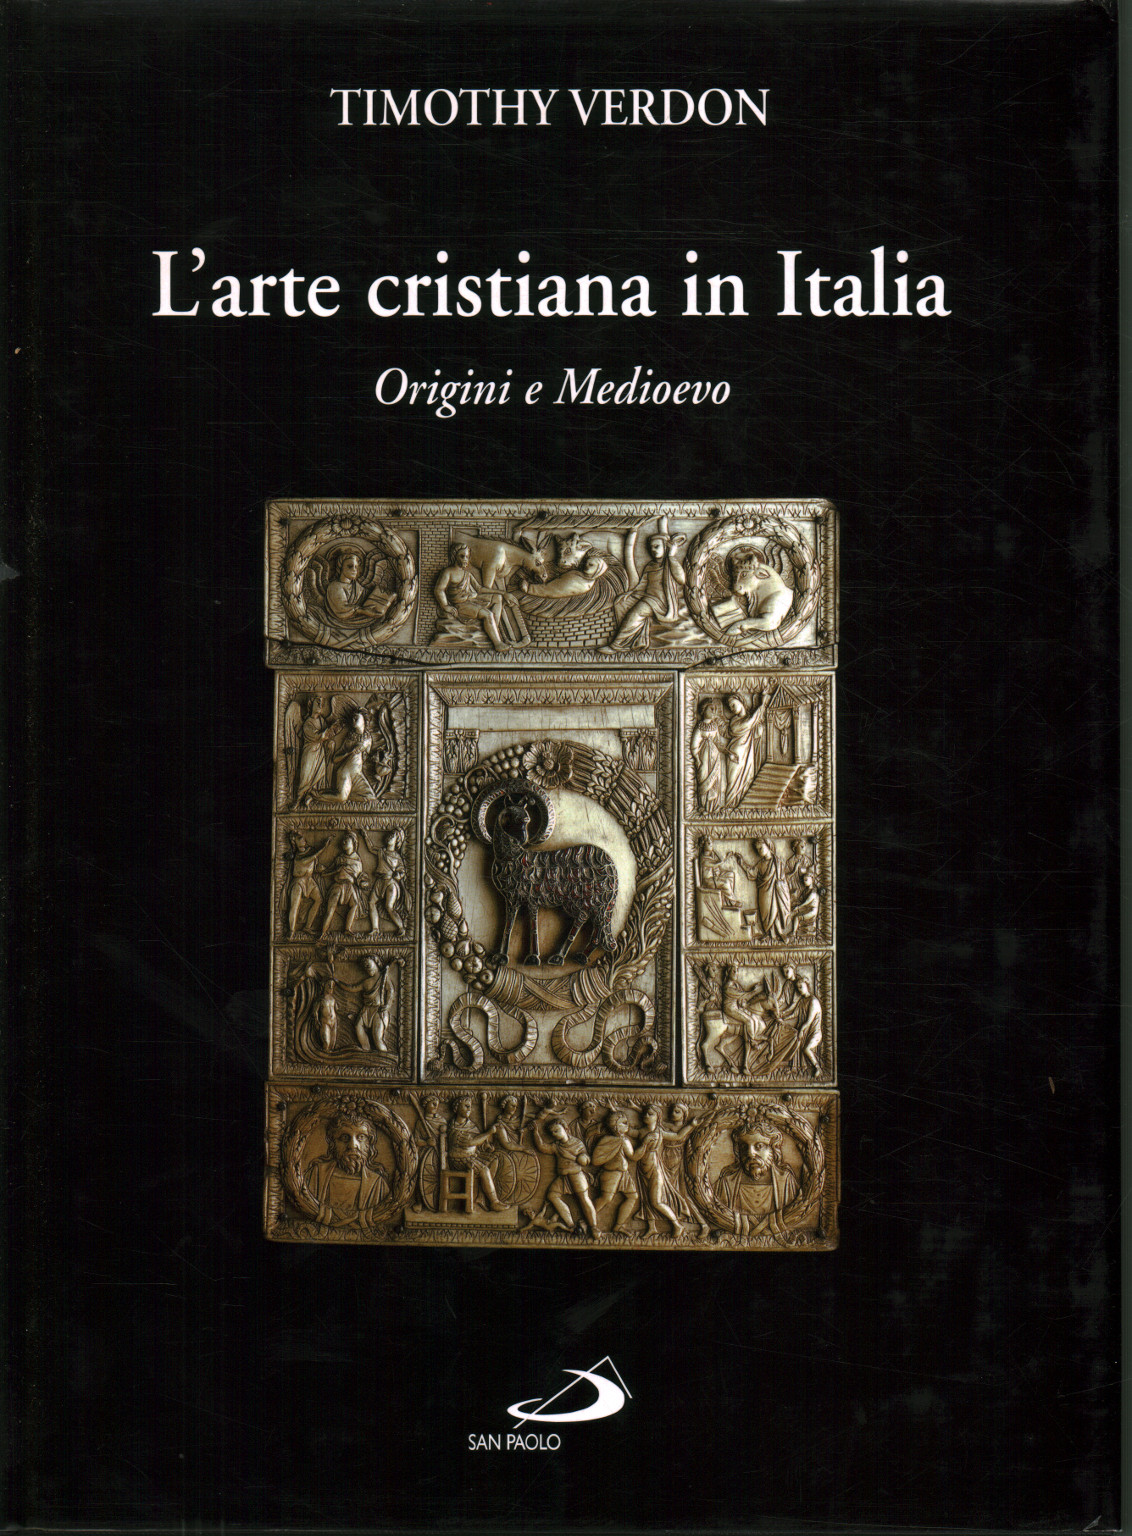 L'art chrétien en Italie (tome 1), Timothy Verdon